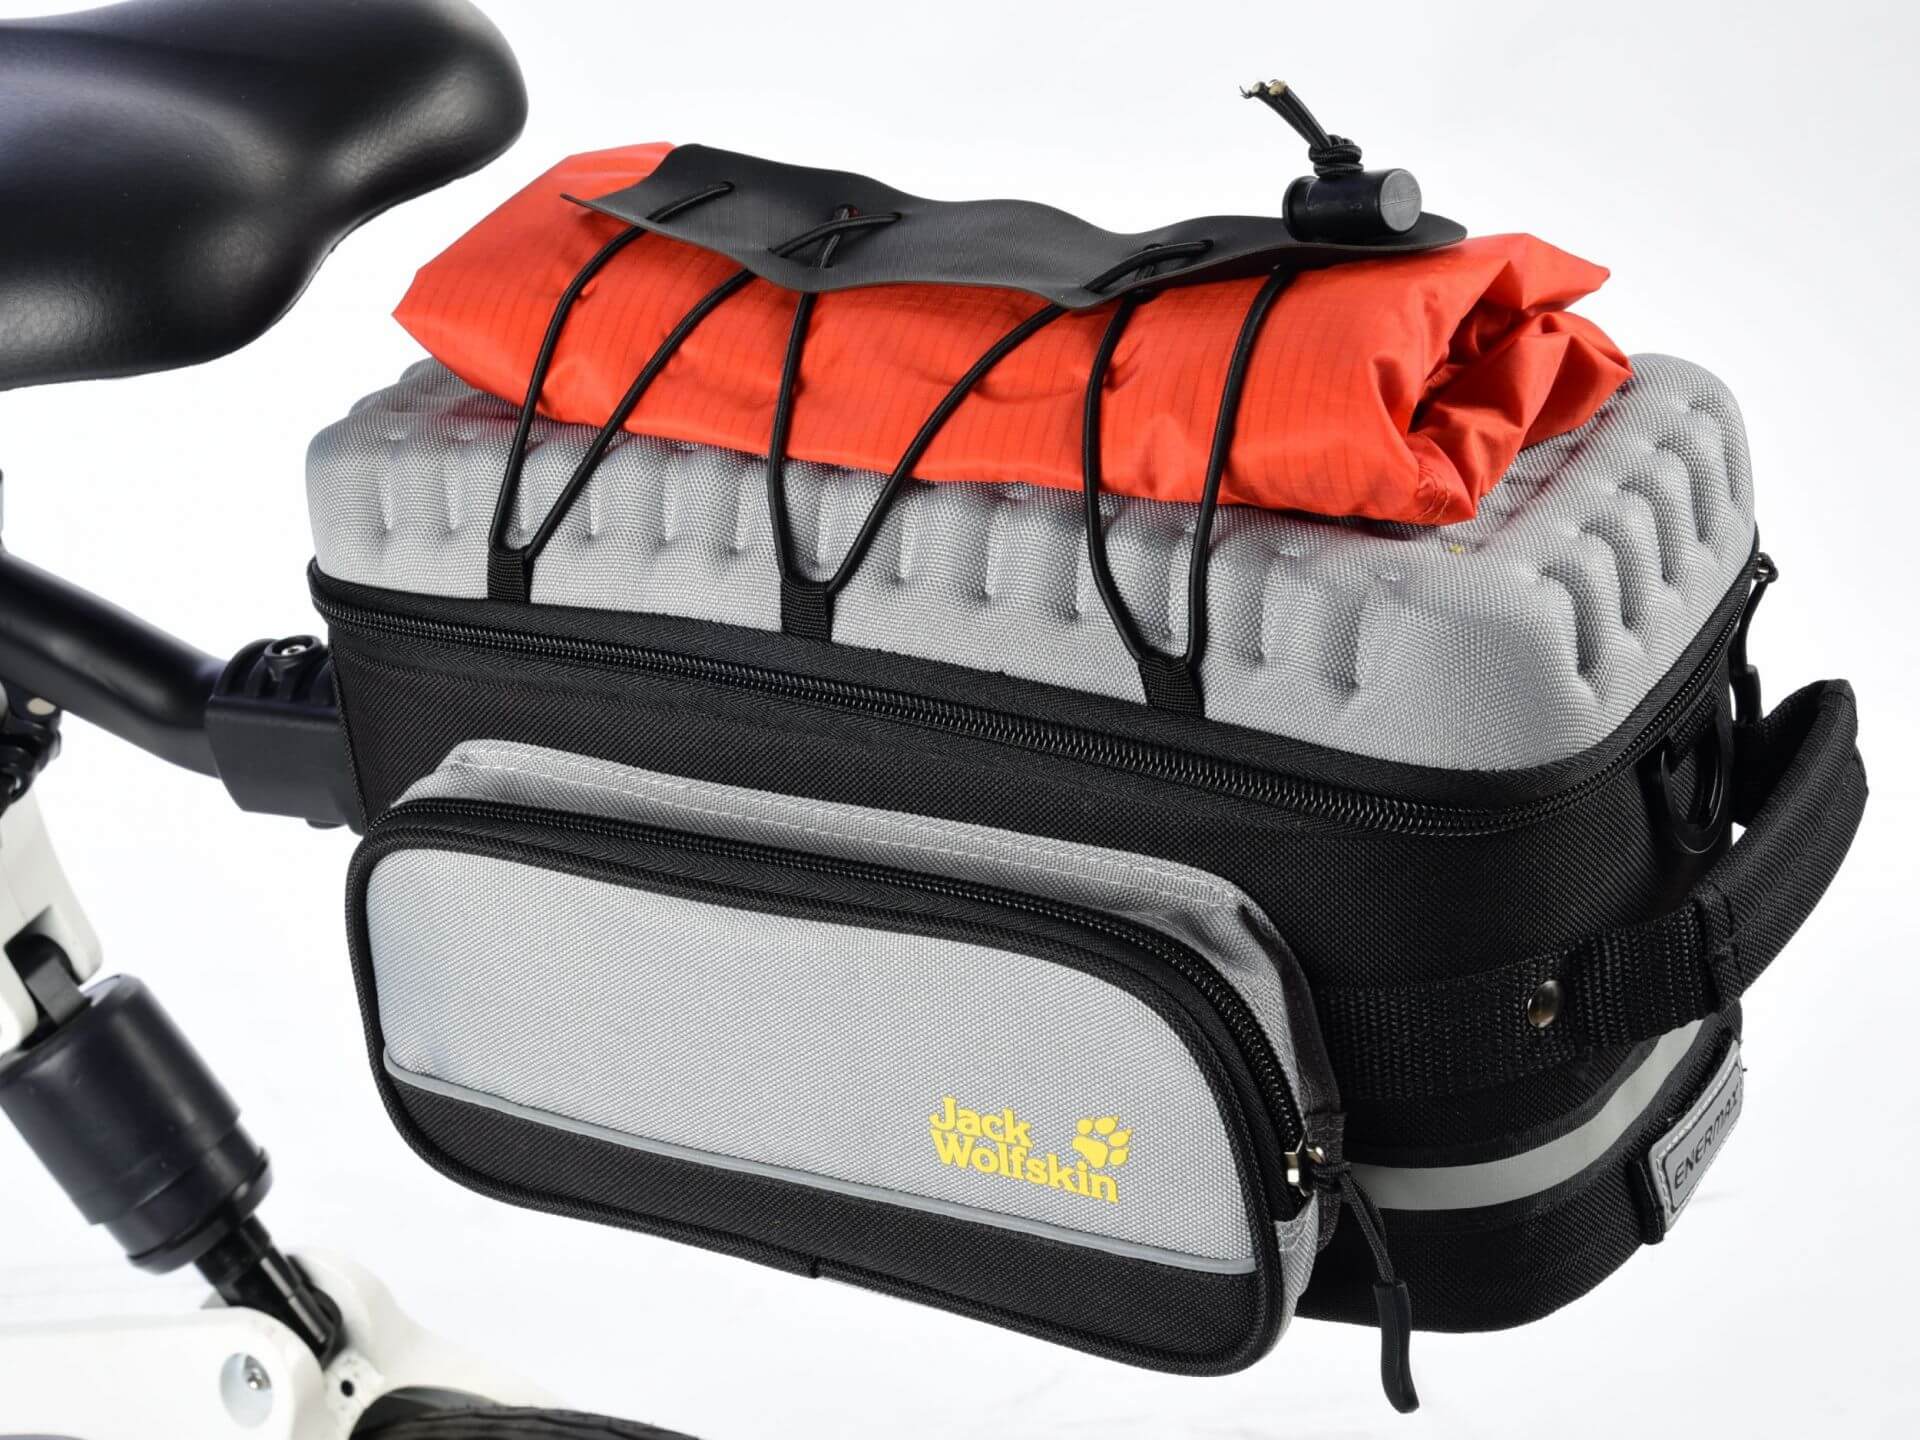 自行車車袋/旅行袋/Jack Wolfskin聯名系列/搭配專屬快拆系統可安裝於任意自行車座桿上/ENERMAX安耐美健康科技